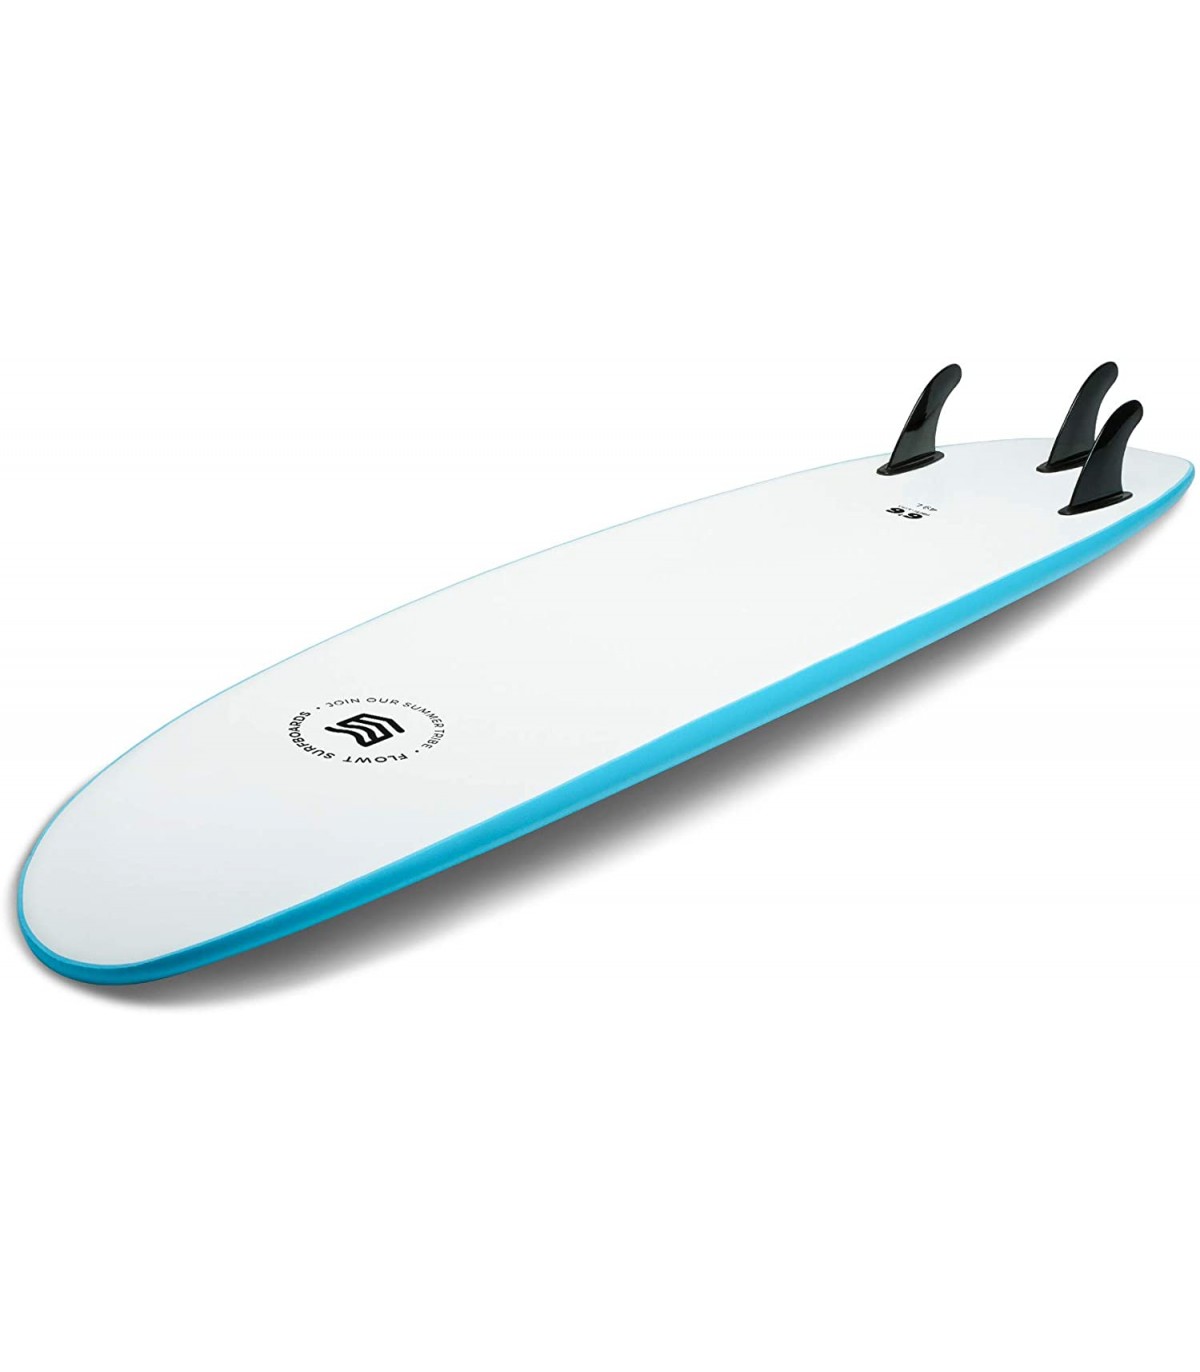 OFERTA - Tabla surf 6'6 modelo Standard Softboard de Flowt